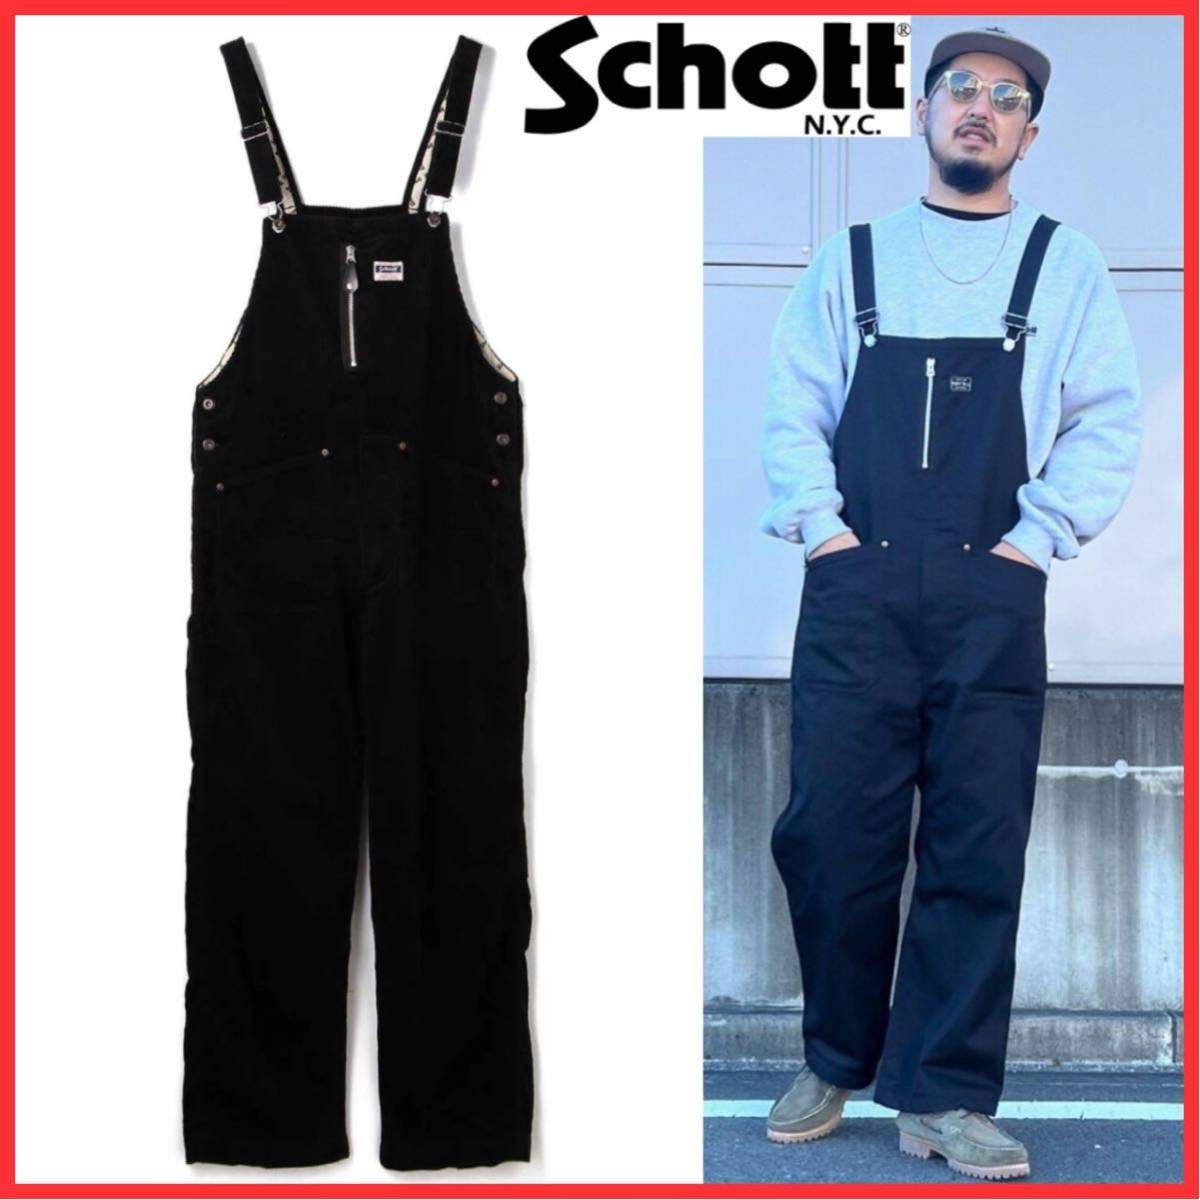  beautiful goods Schott Schott CORDUROY OVERALL PANTS Work corduroy overall all-in-one coveralls coverall overall pants black M